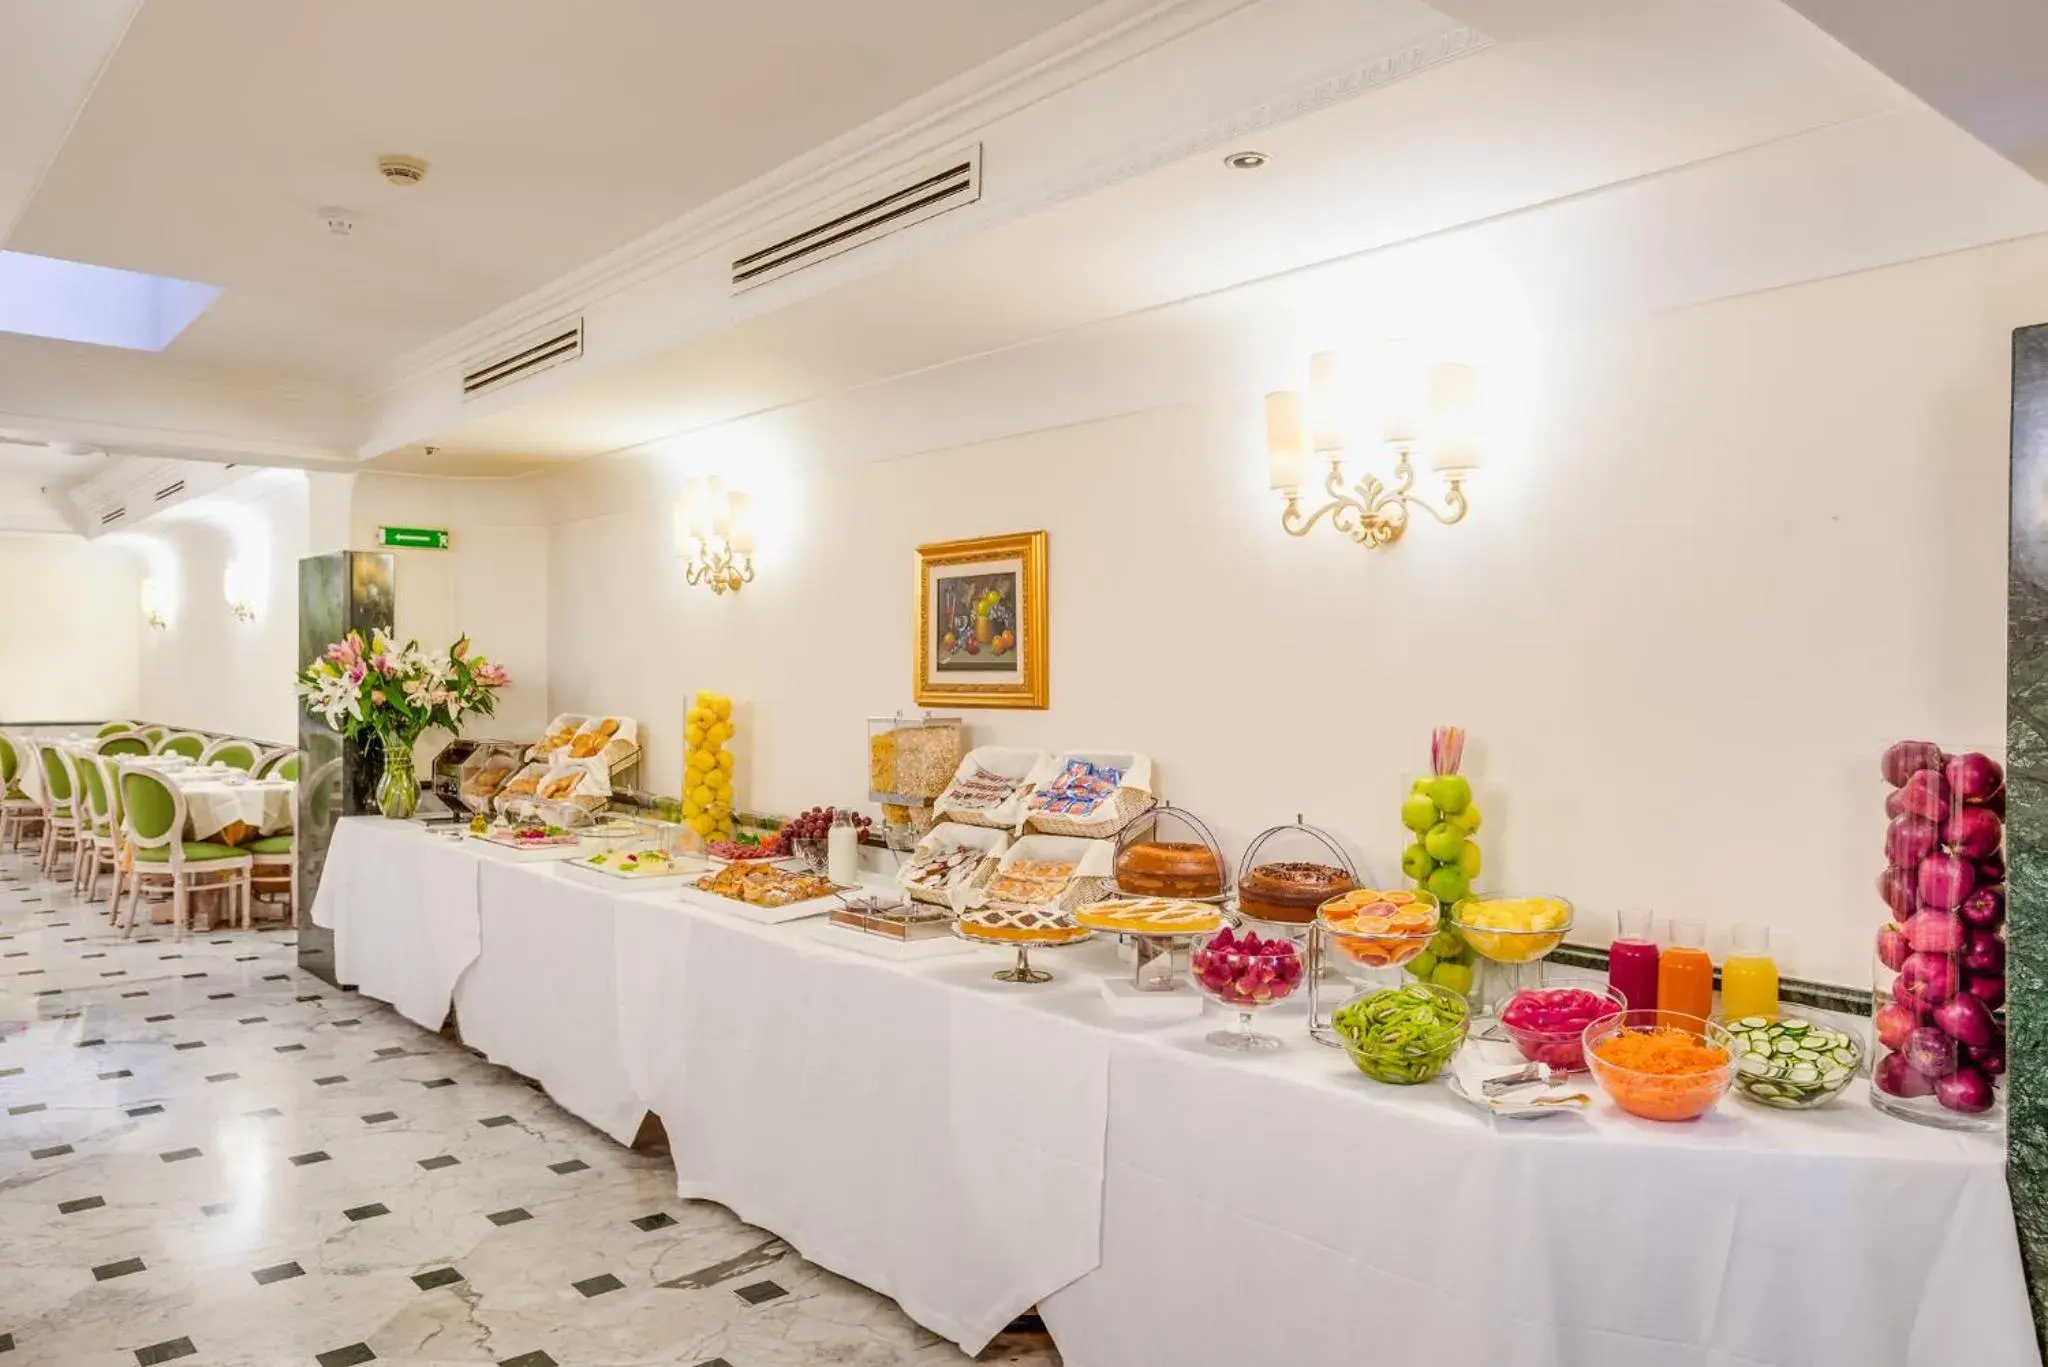 Buffet breakfast in Raeli Hotel Regio